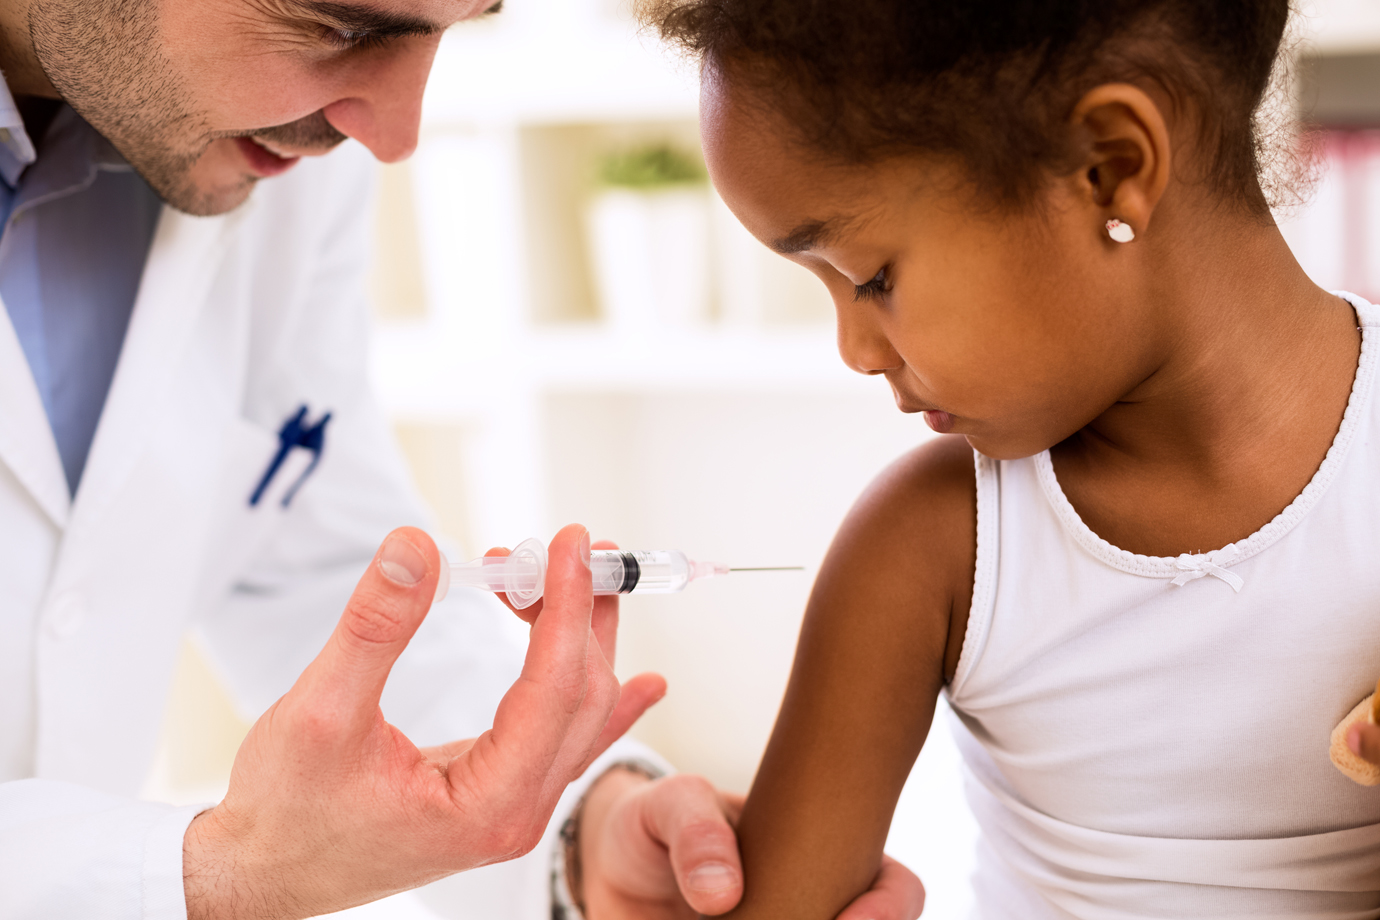 R$ 206 milhões são liberados pelo Ministério da Saúde para ampliar ações de vacinação